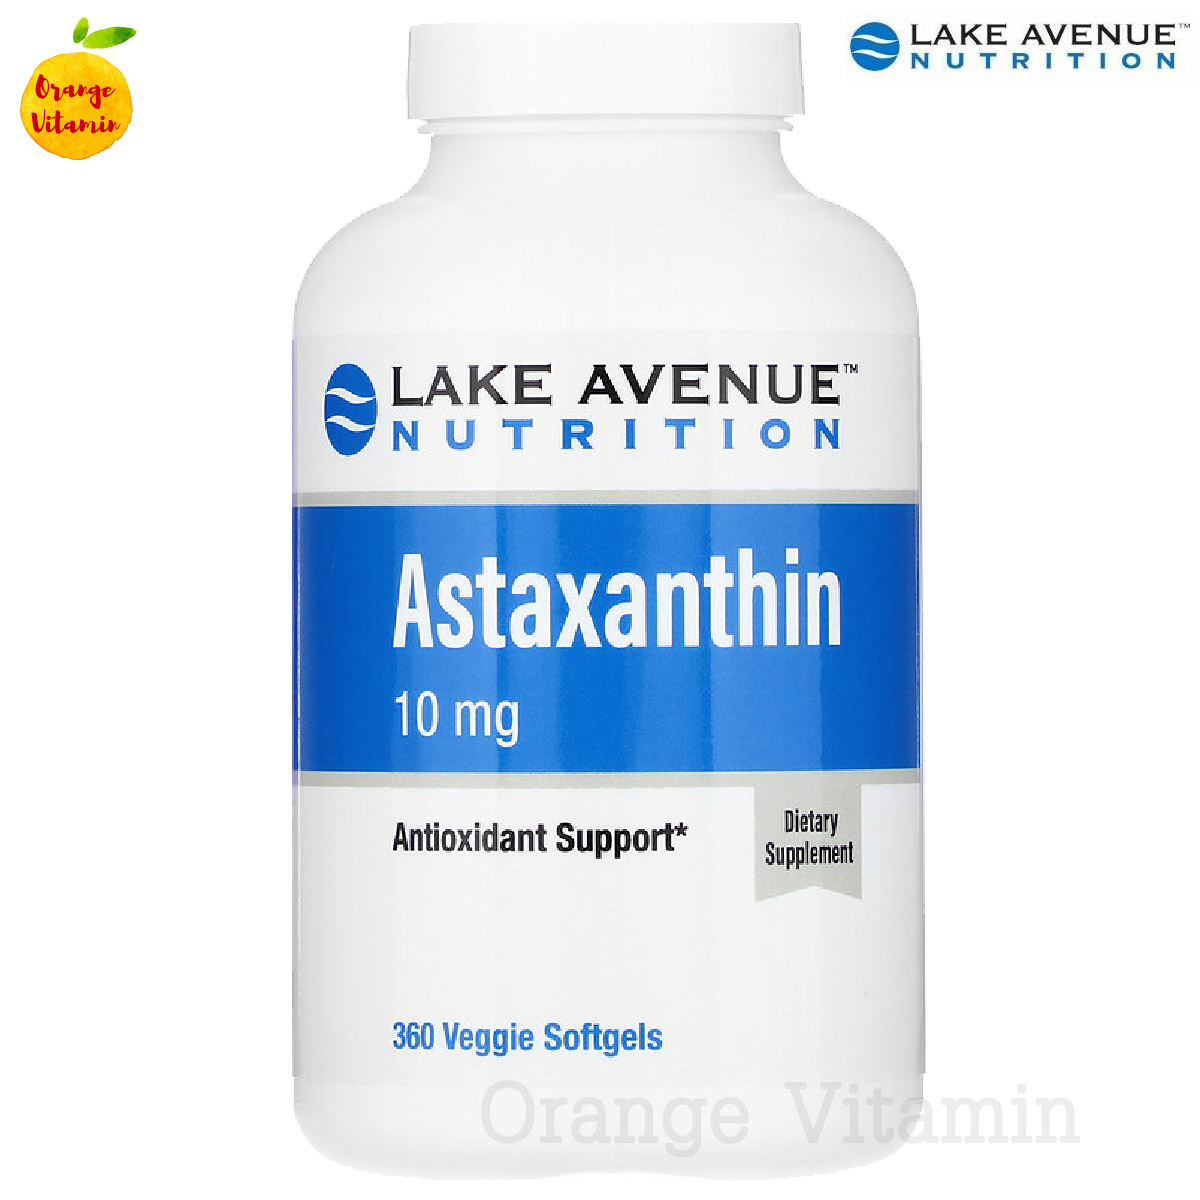 แอสต้าแซนธิน สารสกัดจากสาหร่ายสีแดง Lake Avenue Nutrition, Astaxanthin, 10 mg, 360 Veggie Softgels แอสต้าแซนธีน แอสต้าแซนทีน สาหร่ายสีแดง